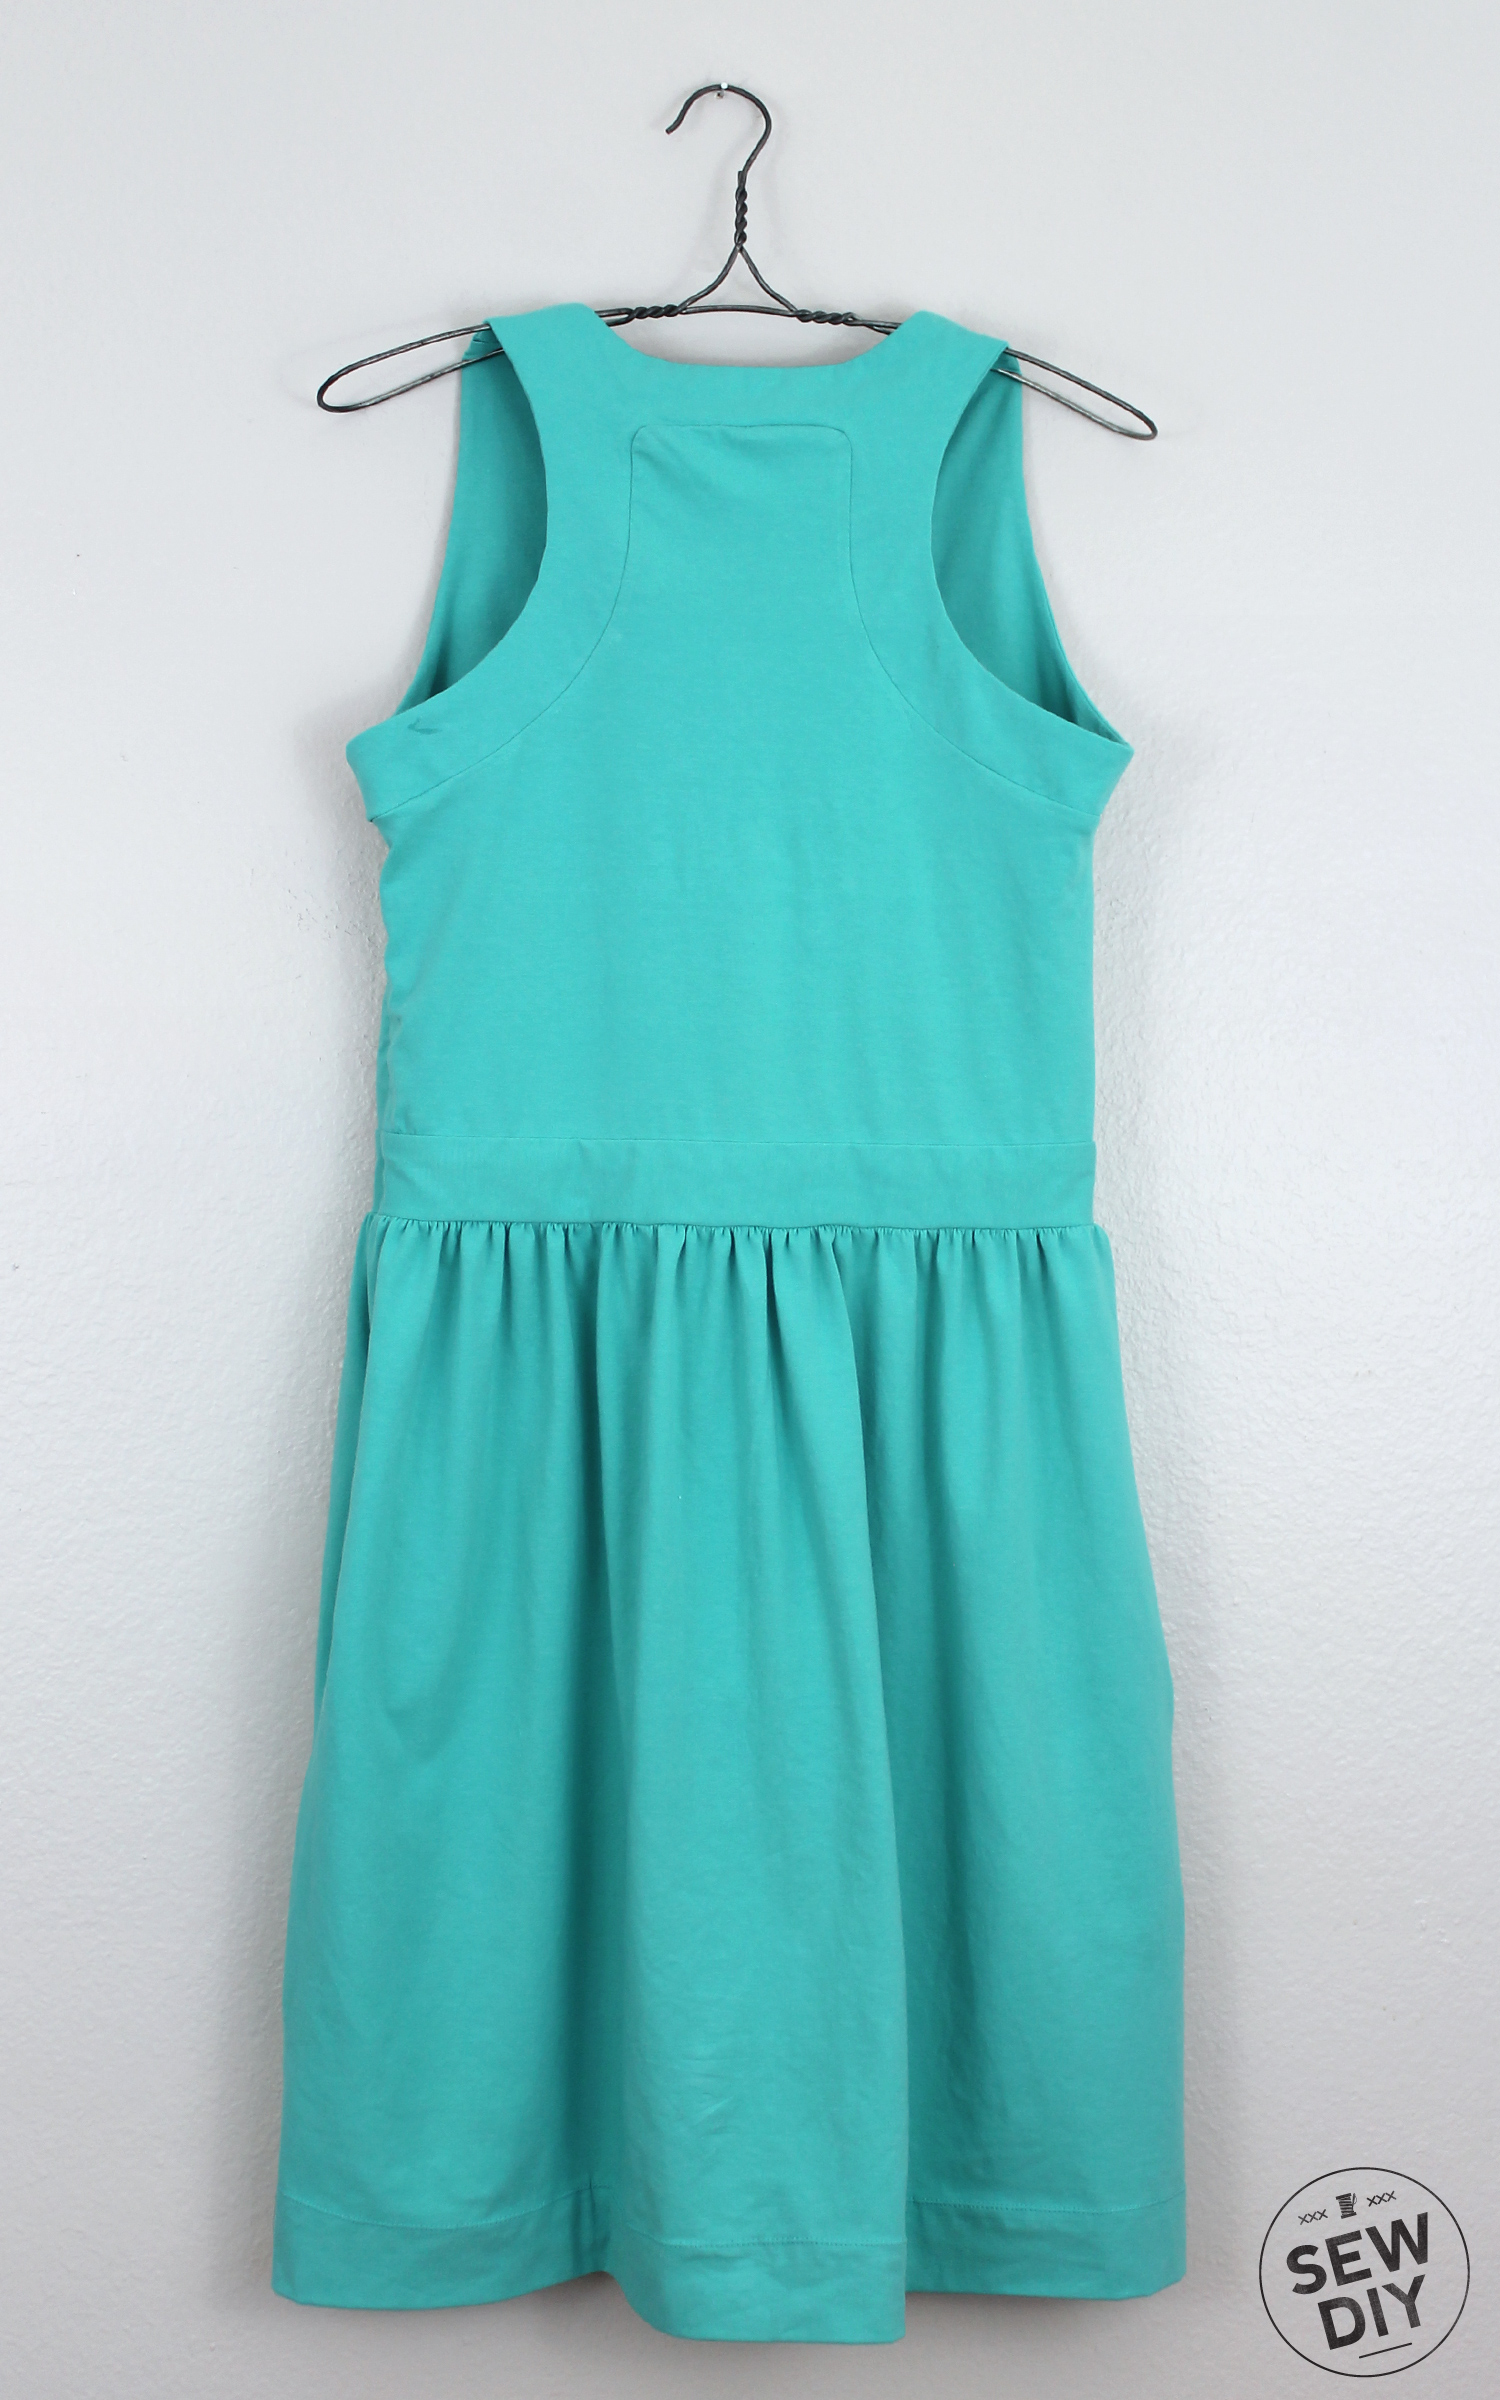 Teal Racerback Dress - Simplicity 2443 — Sew DIY